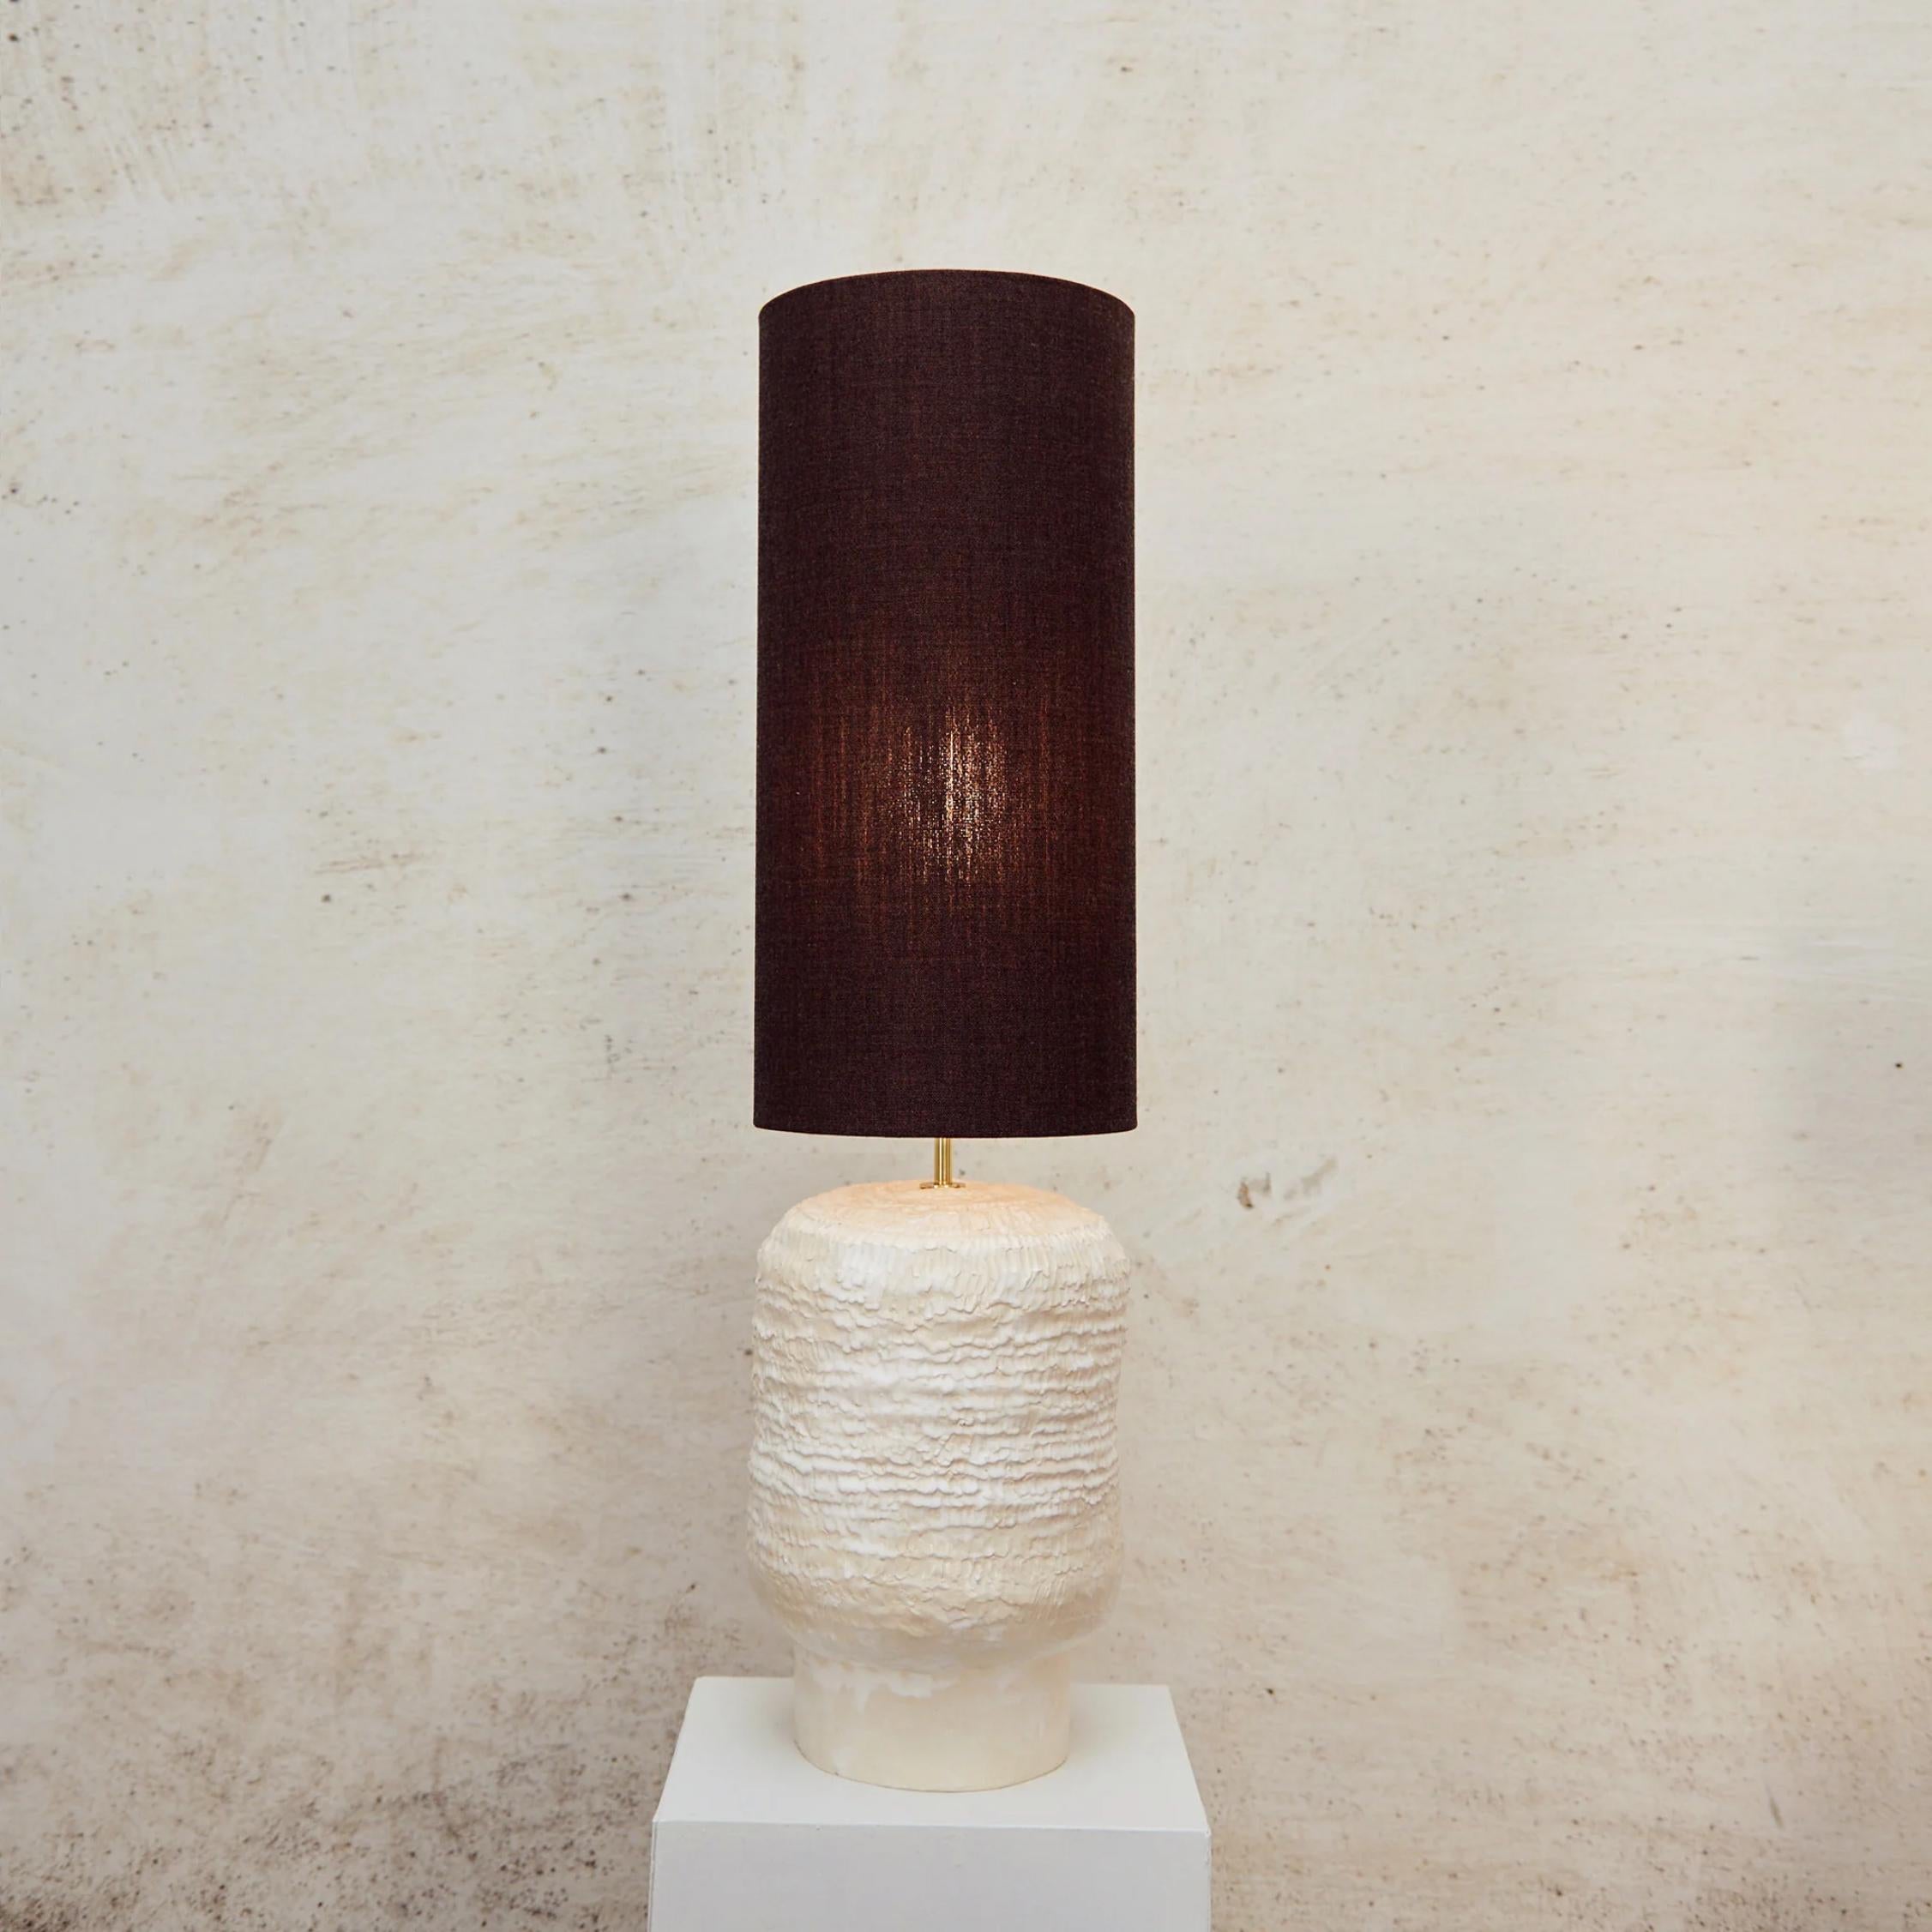 Lampe en céramique texturée de Project 213A
Dimensions : L 23 x D 23 x H 89 cm
MATERIAL : Céramique, laine, nylon

Les lampes en céramique artisanale ont été créées en interne et sont le résultat de l'exploration de formes traditionnelles avec une